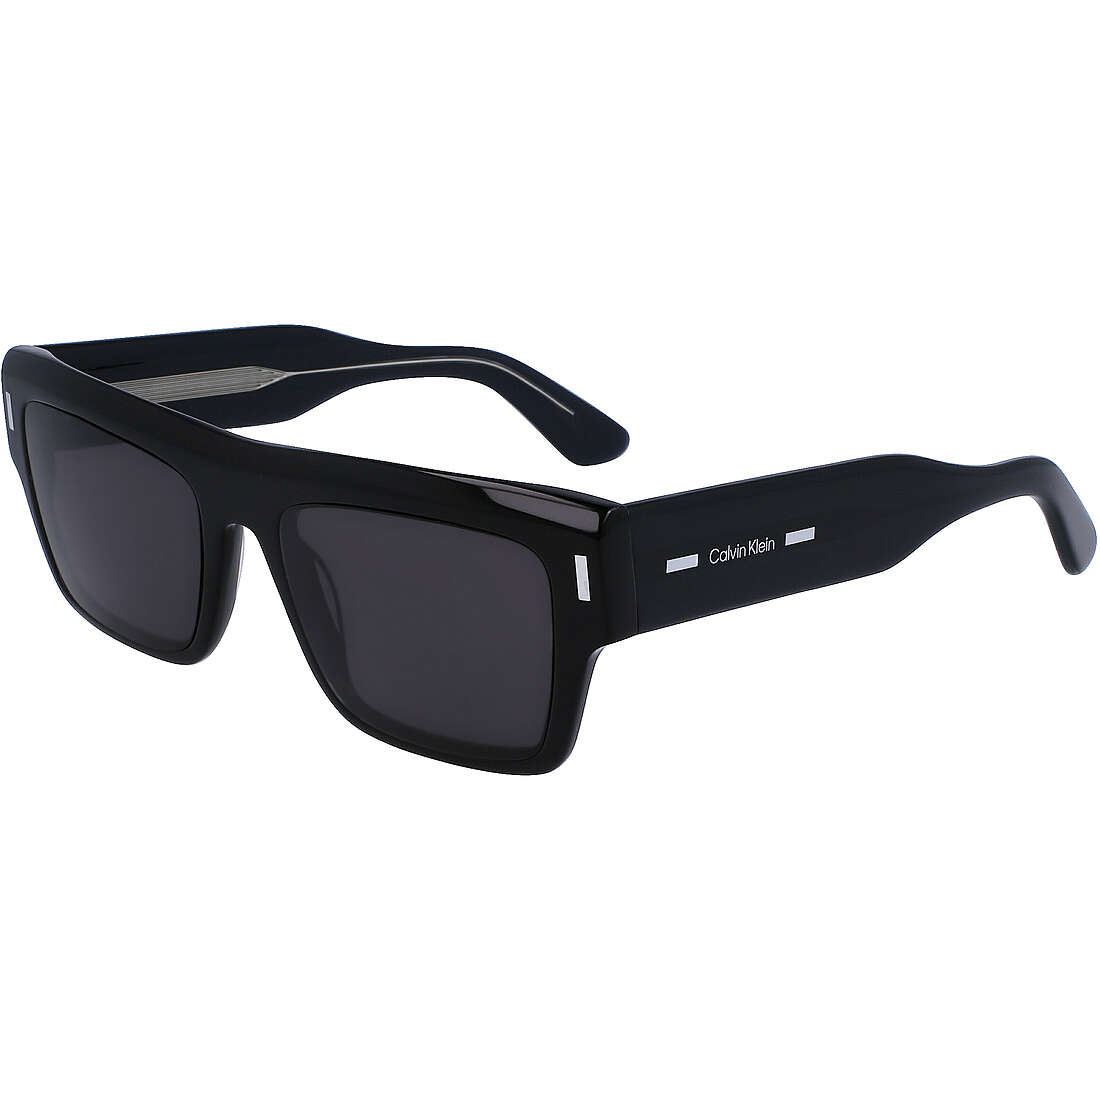 sunglasses unisex Calvin Klein CK23504S5519001